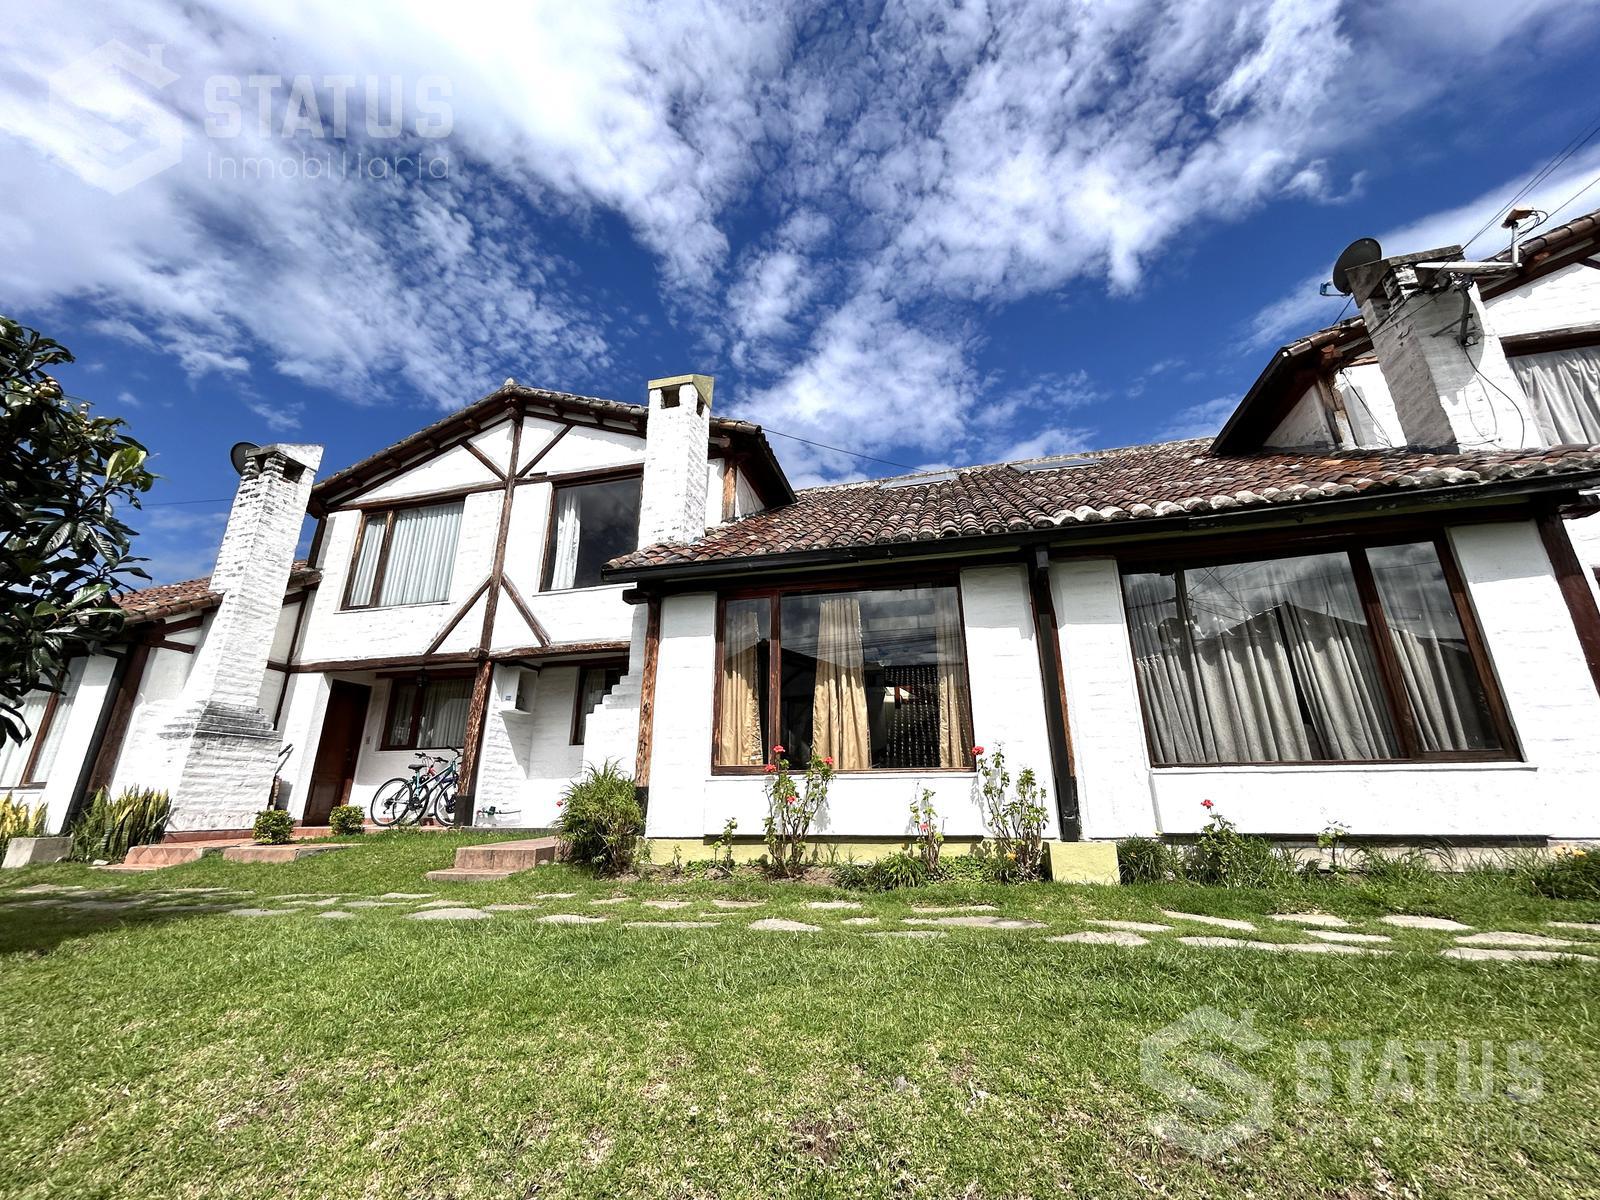 Vendo casa en conjunto sector Sangolquí – Los Chillos, 4 Dorm., 1 garaje, 134m, $87.500